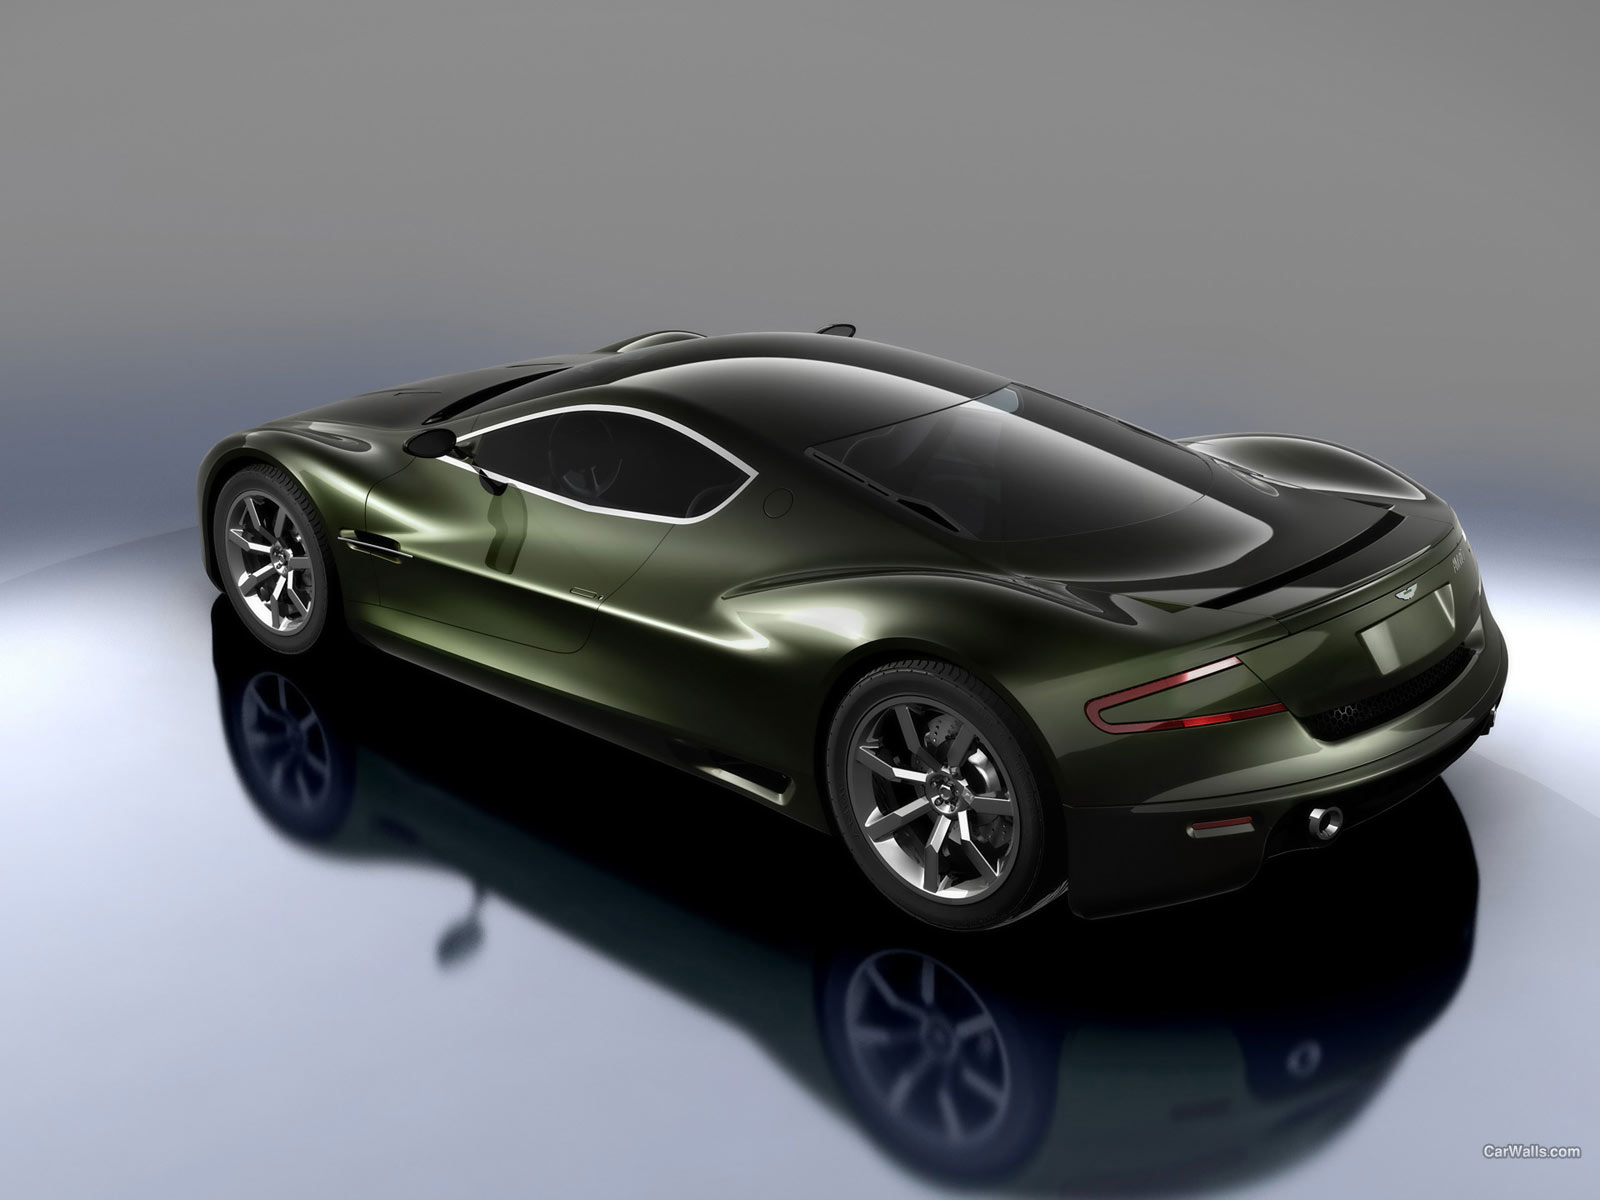 ASTON MARTIN CAR WALLPAPERS: Aston Martin AMV10 Concept Car Wallpapers